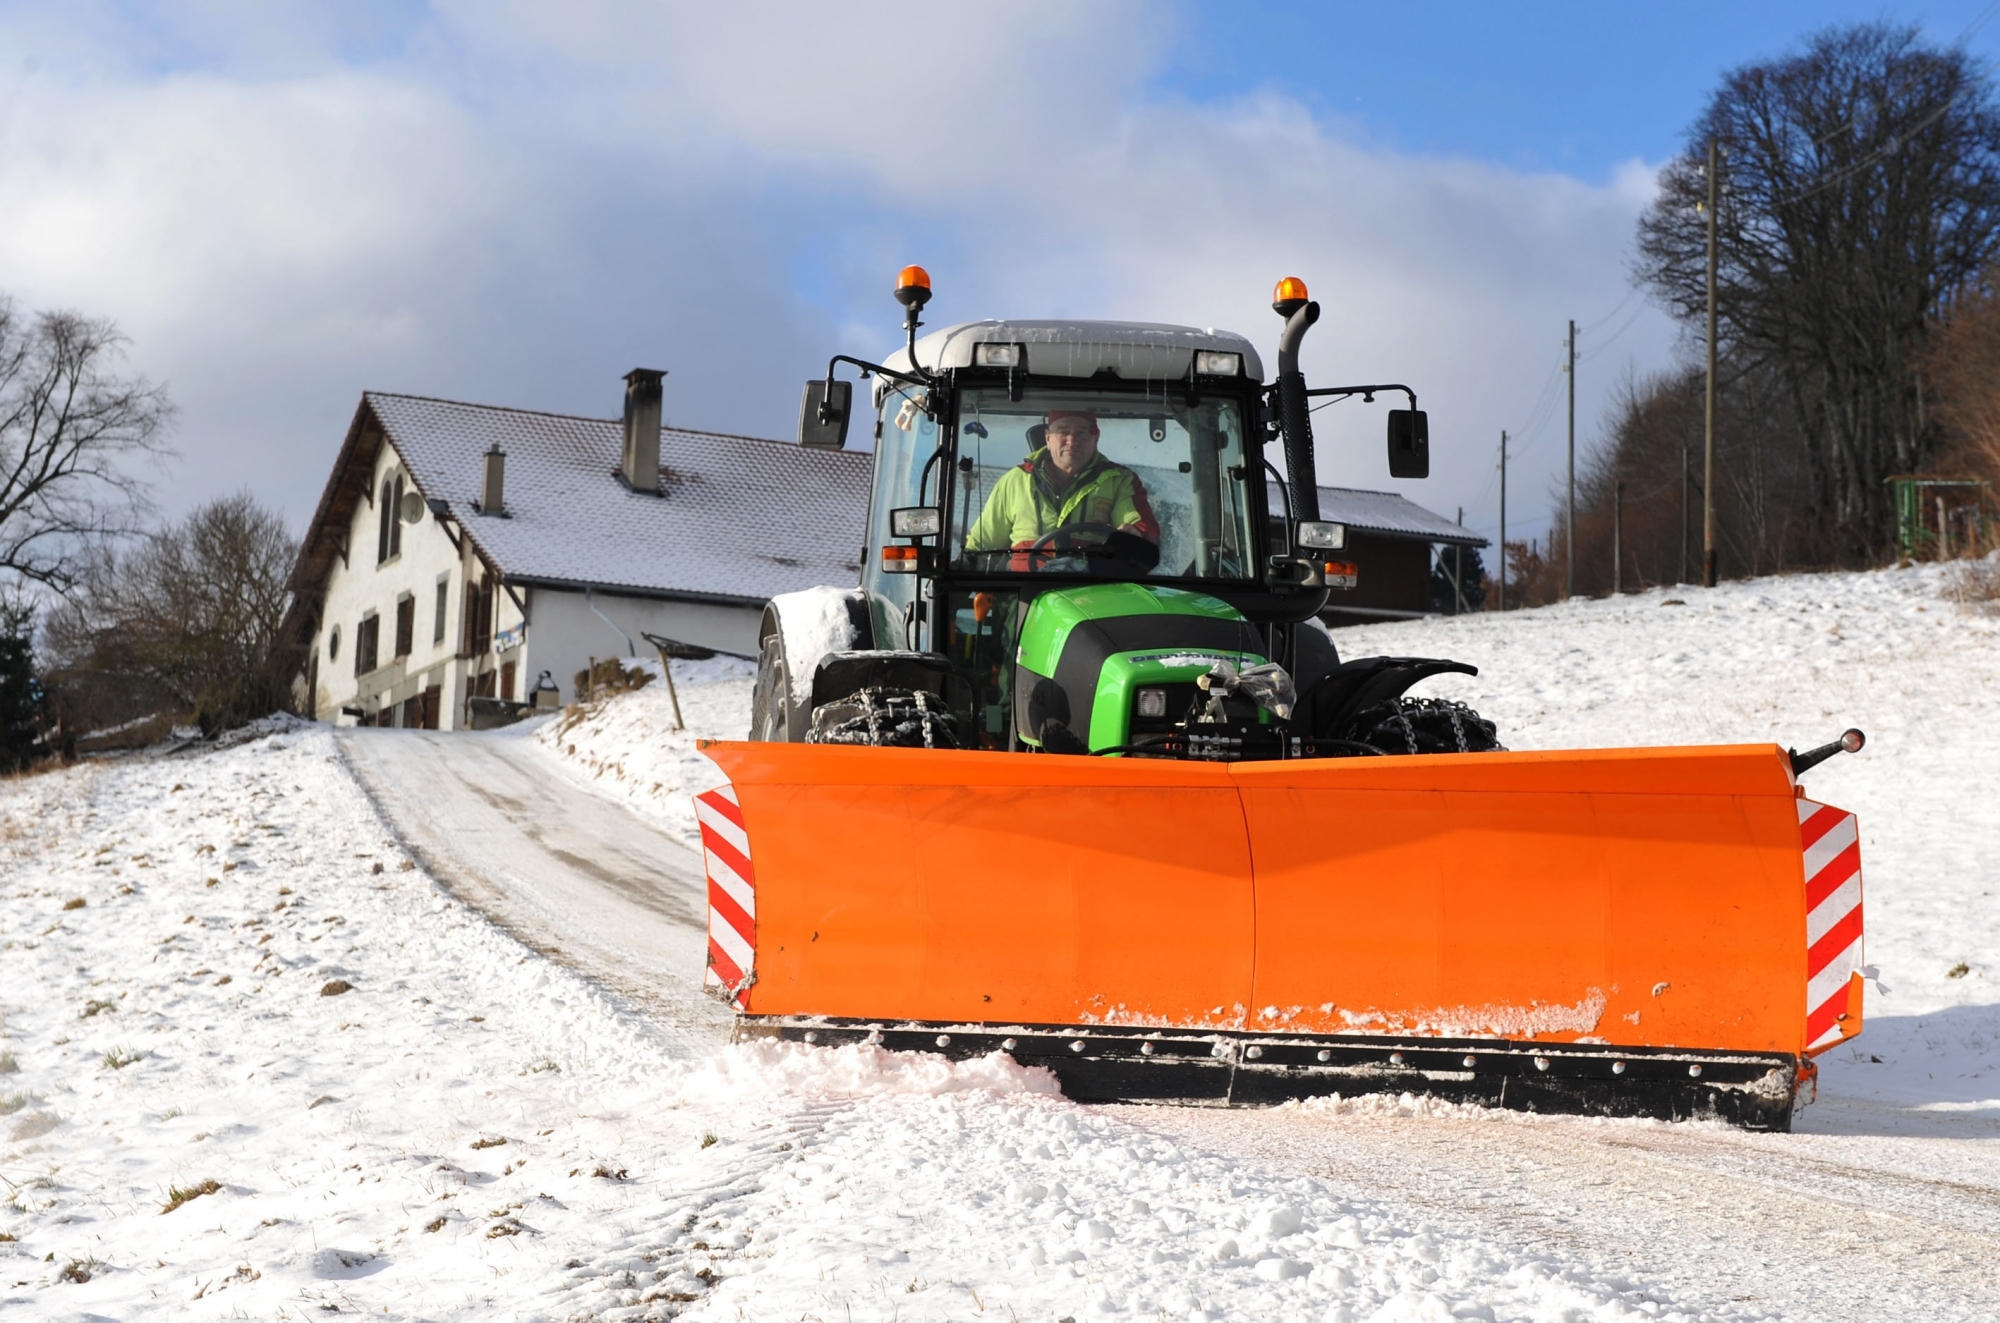 Le tracteur accidenté aux Verrières était muni d'une lame à neige comme cet engin photographié à Montmollin (image d'illustration).